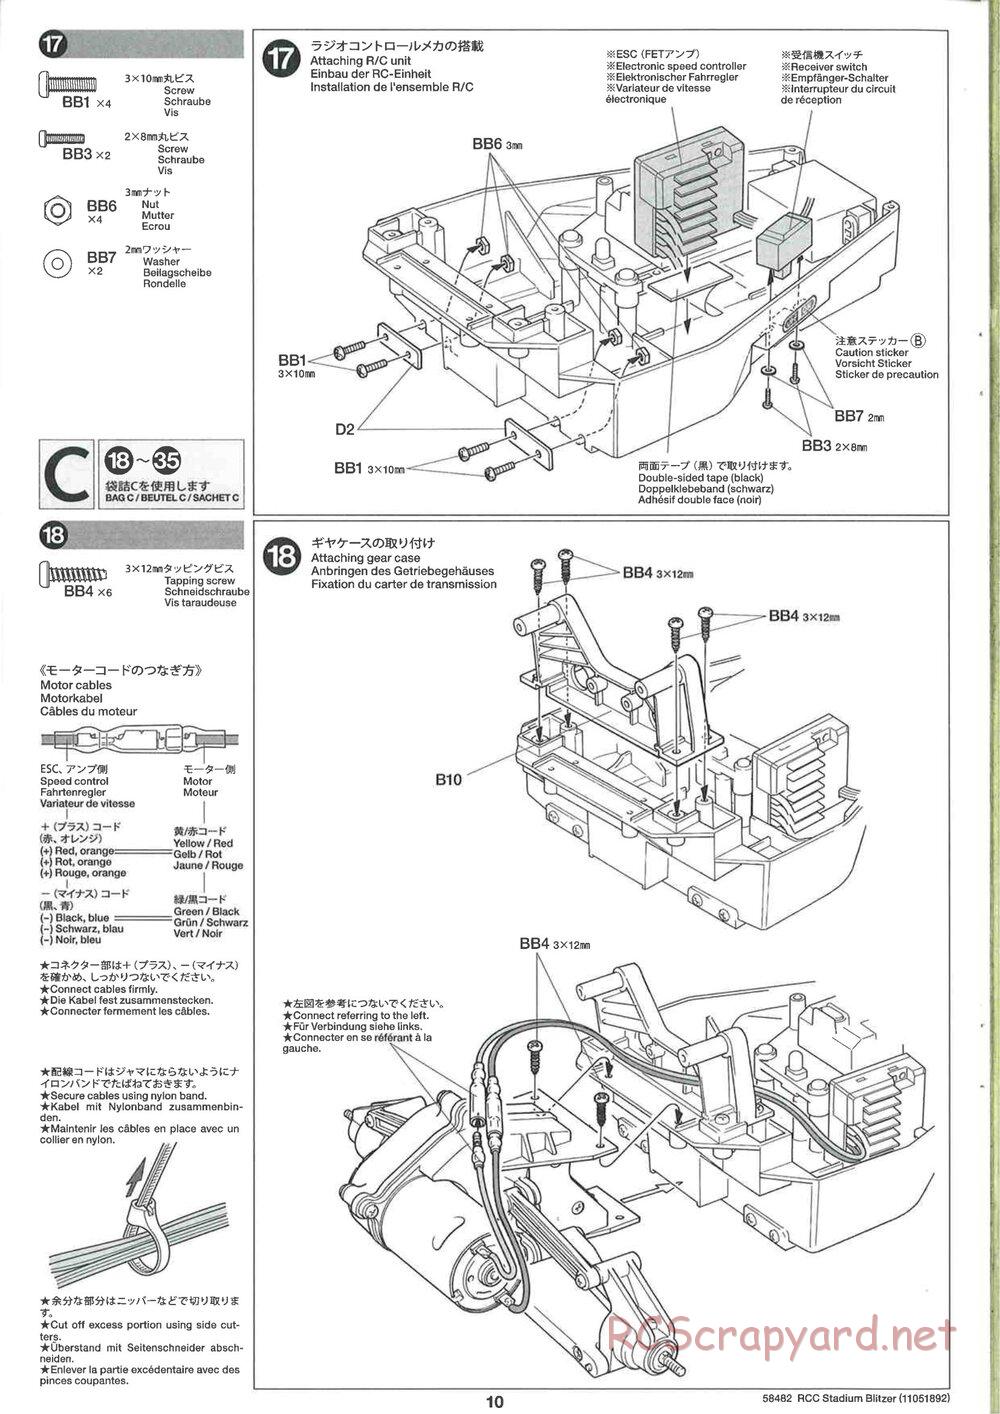 Tamiya - Stadium Blitzer 2010 - FAL Chassis - Manual - Page 10